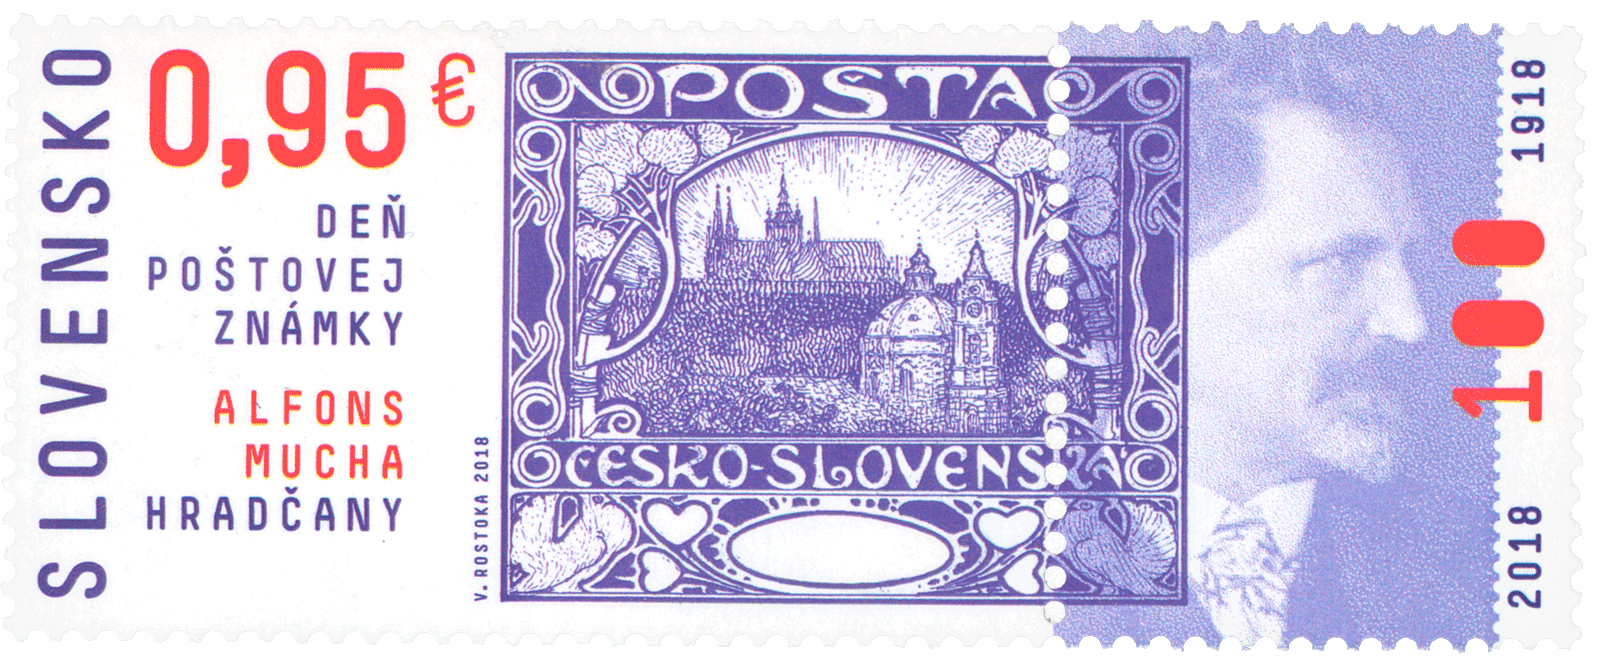 676 - Deň poštovej známky: A. Mucha – Hradčany